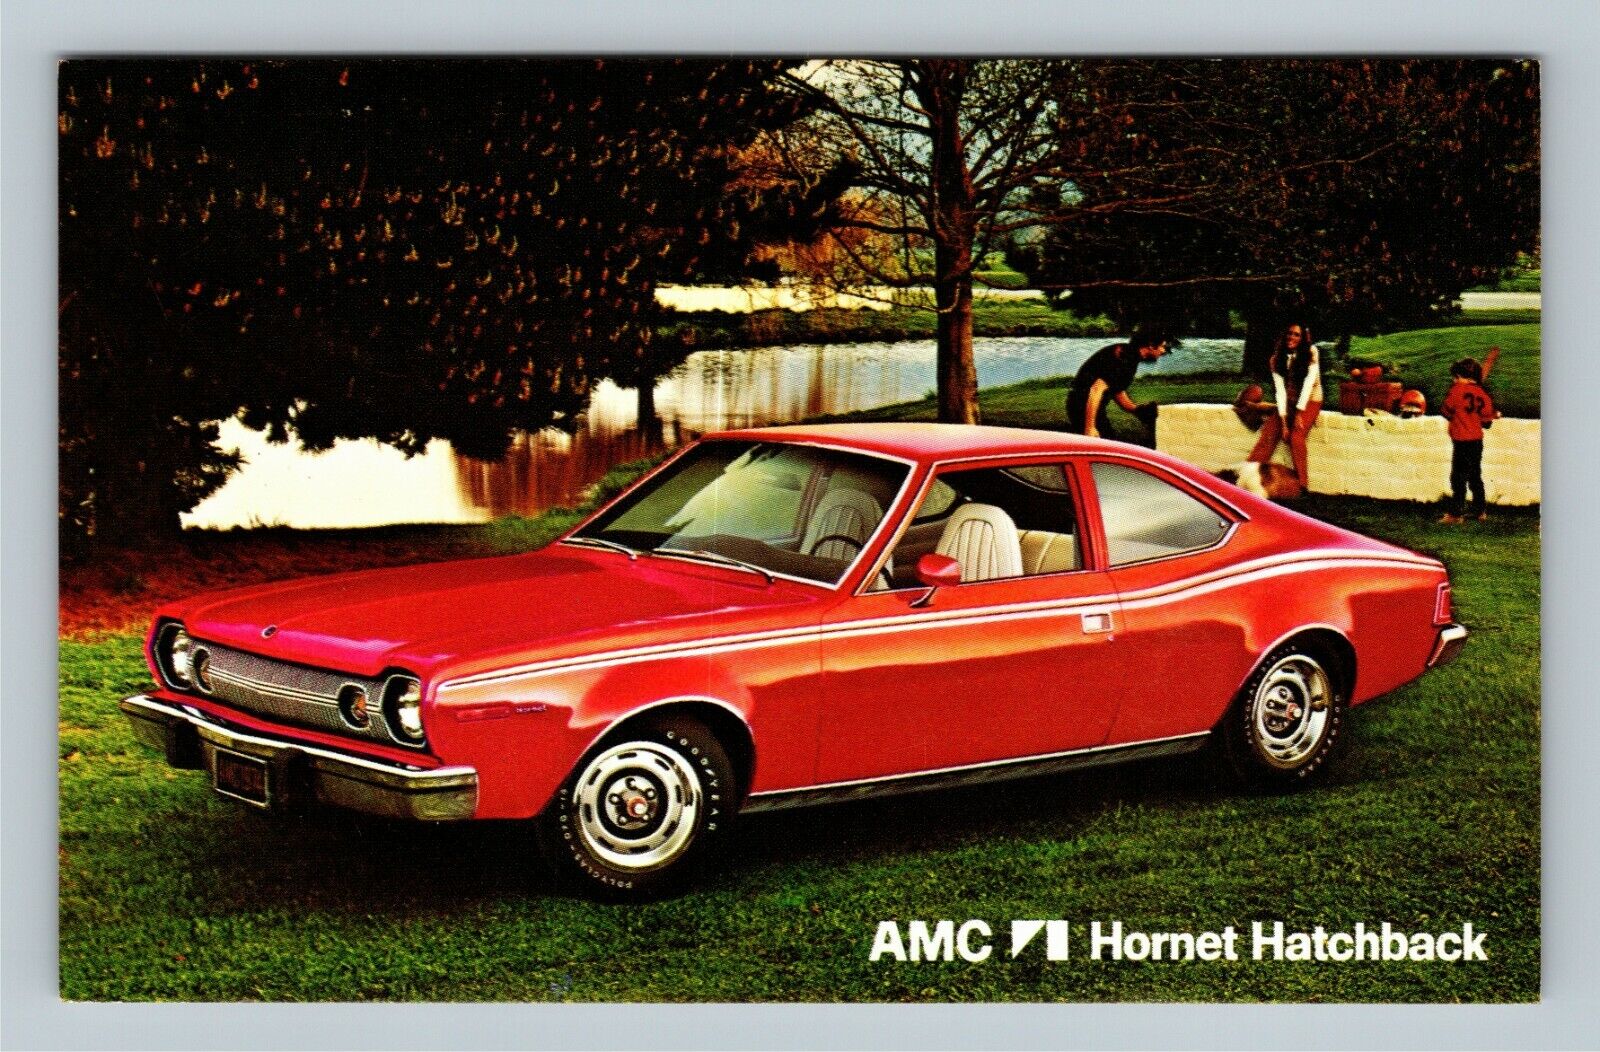 Automobile-AMC Hornet Hatchback, 2-Door Red, Vintage Postcard